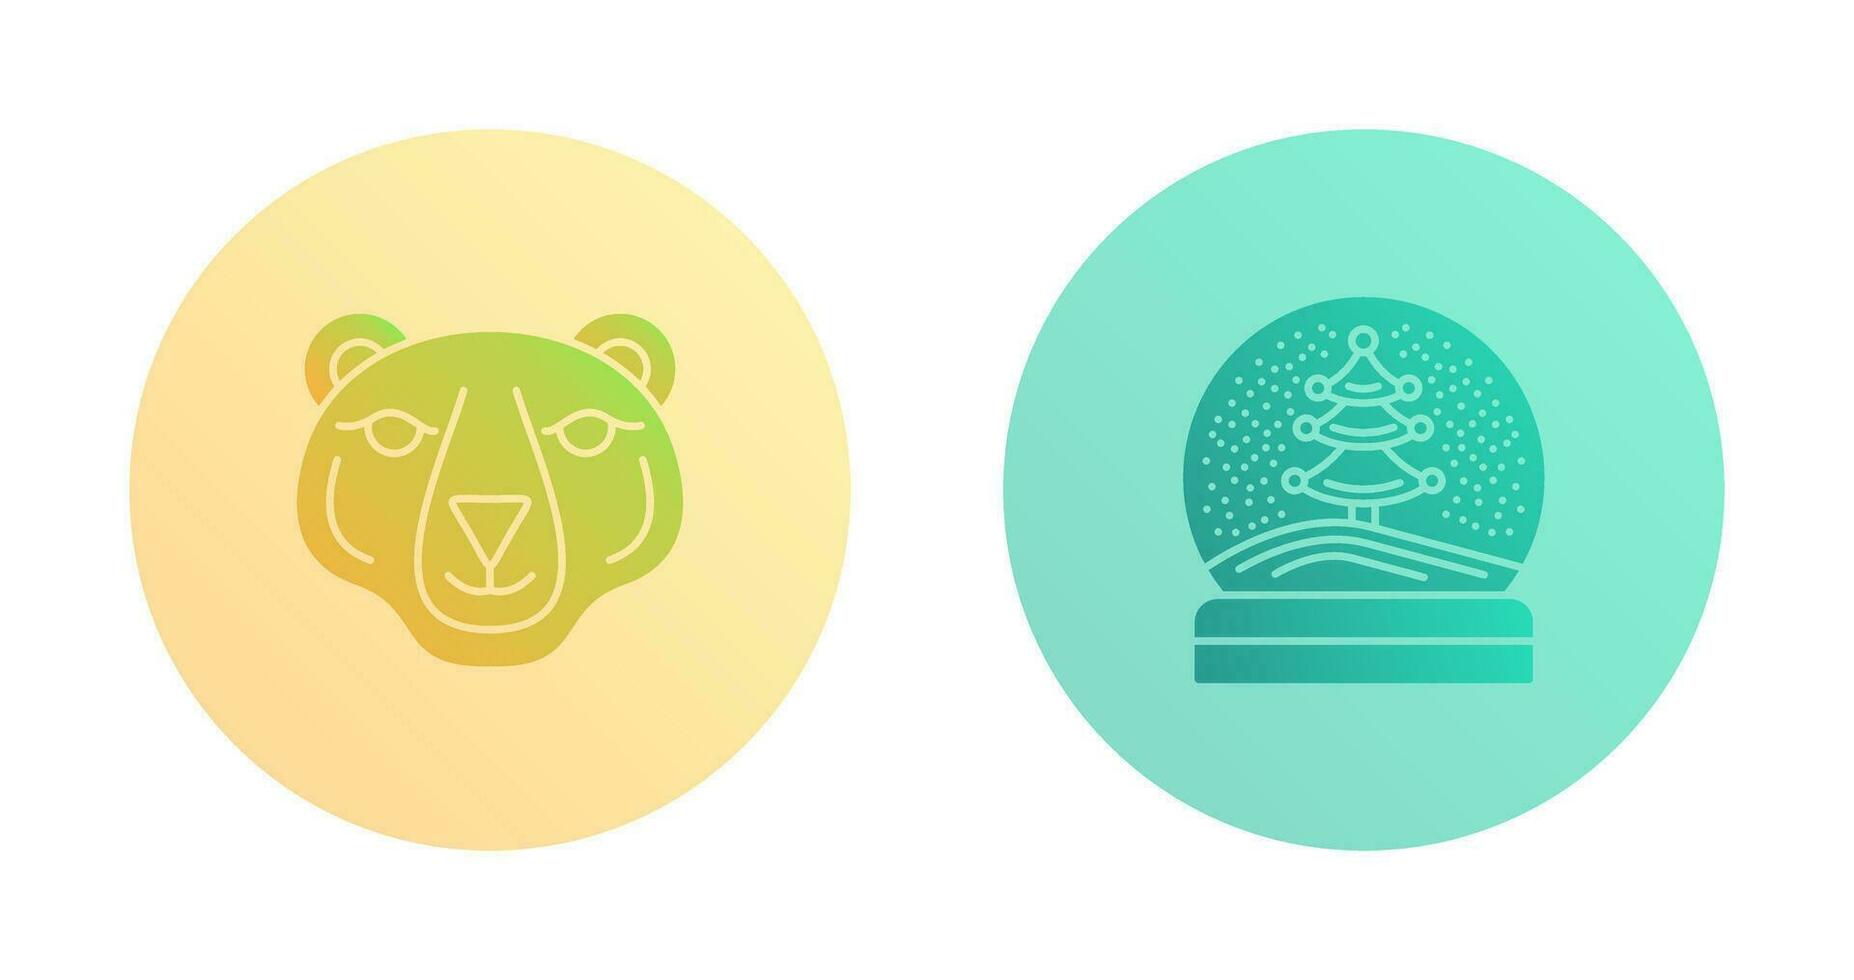 Polar Bear and Snow Globe Icon vector